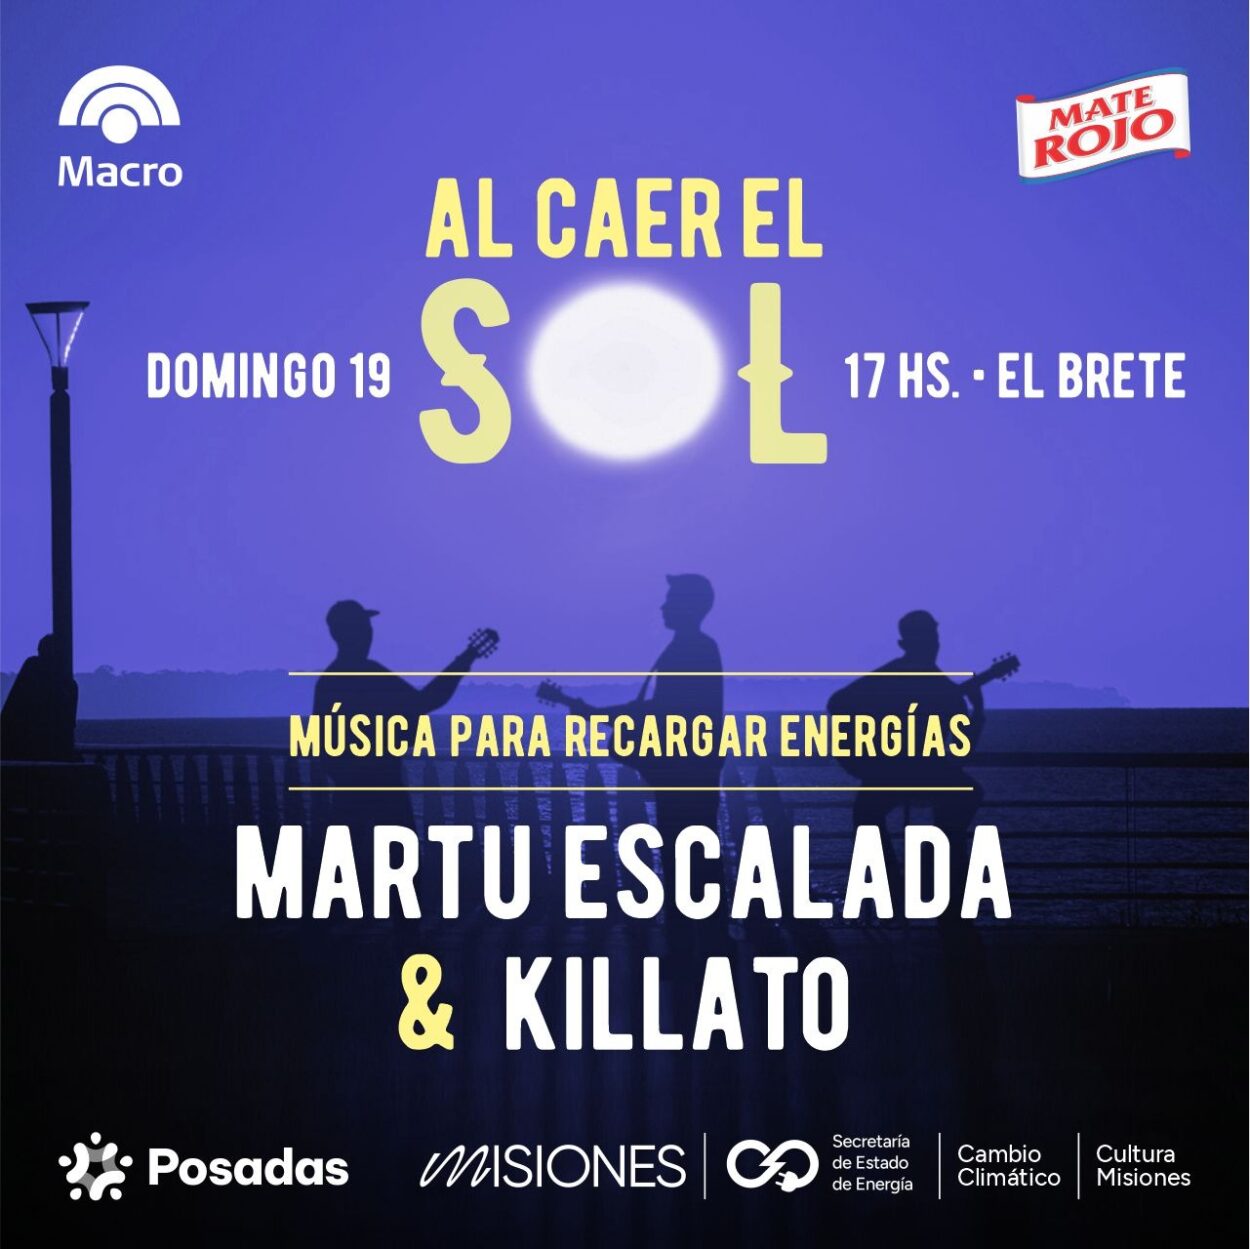 Martu Escalada y Killato: rock y música urbana este domingo “Al caer el sol en El Brete” imagen-8